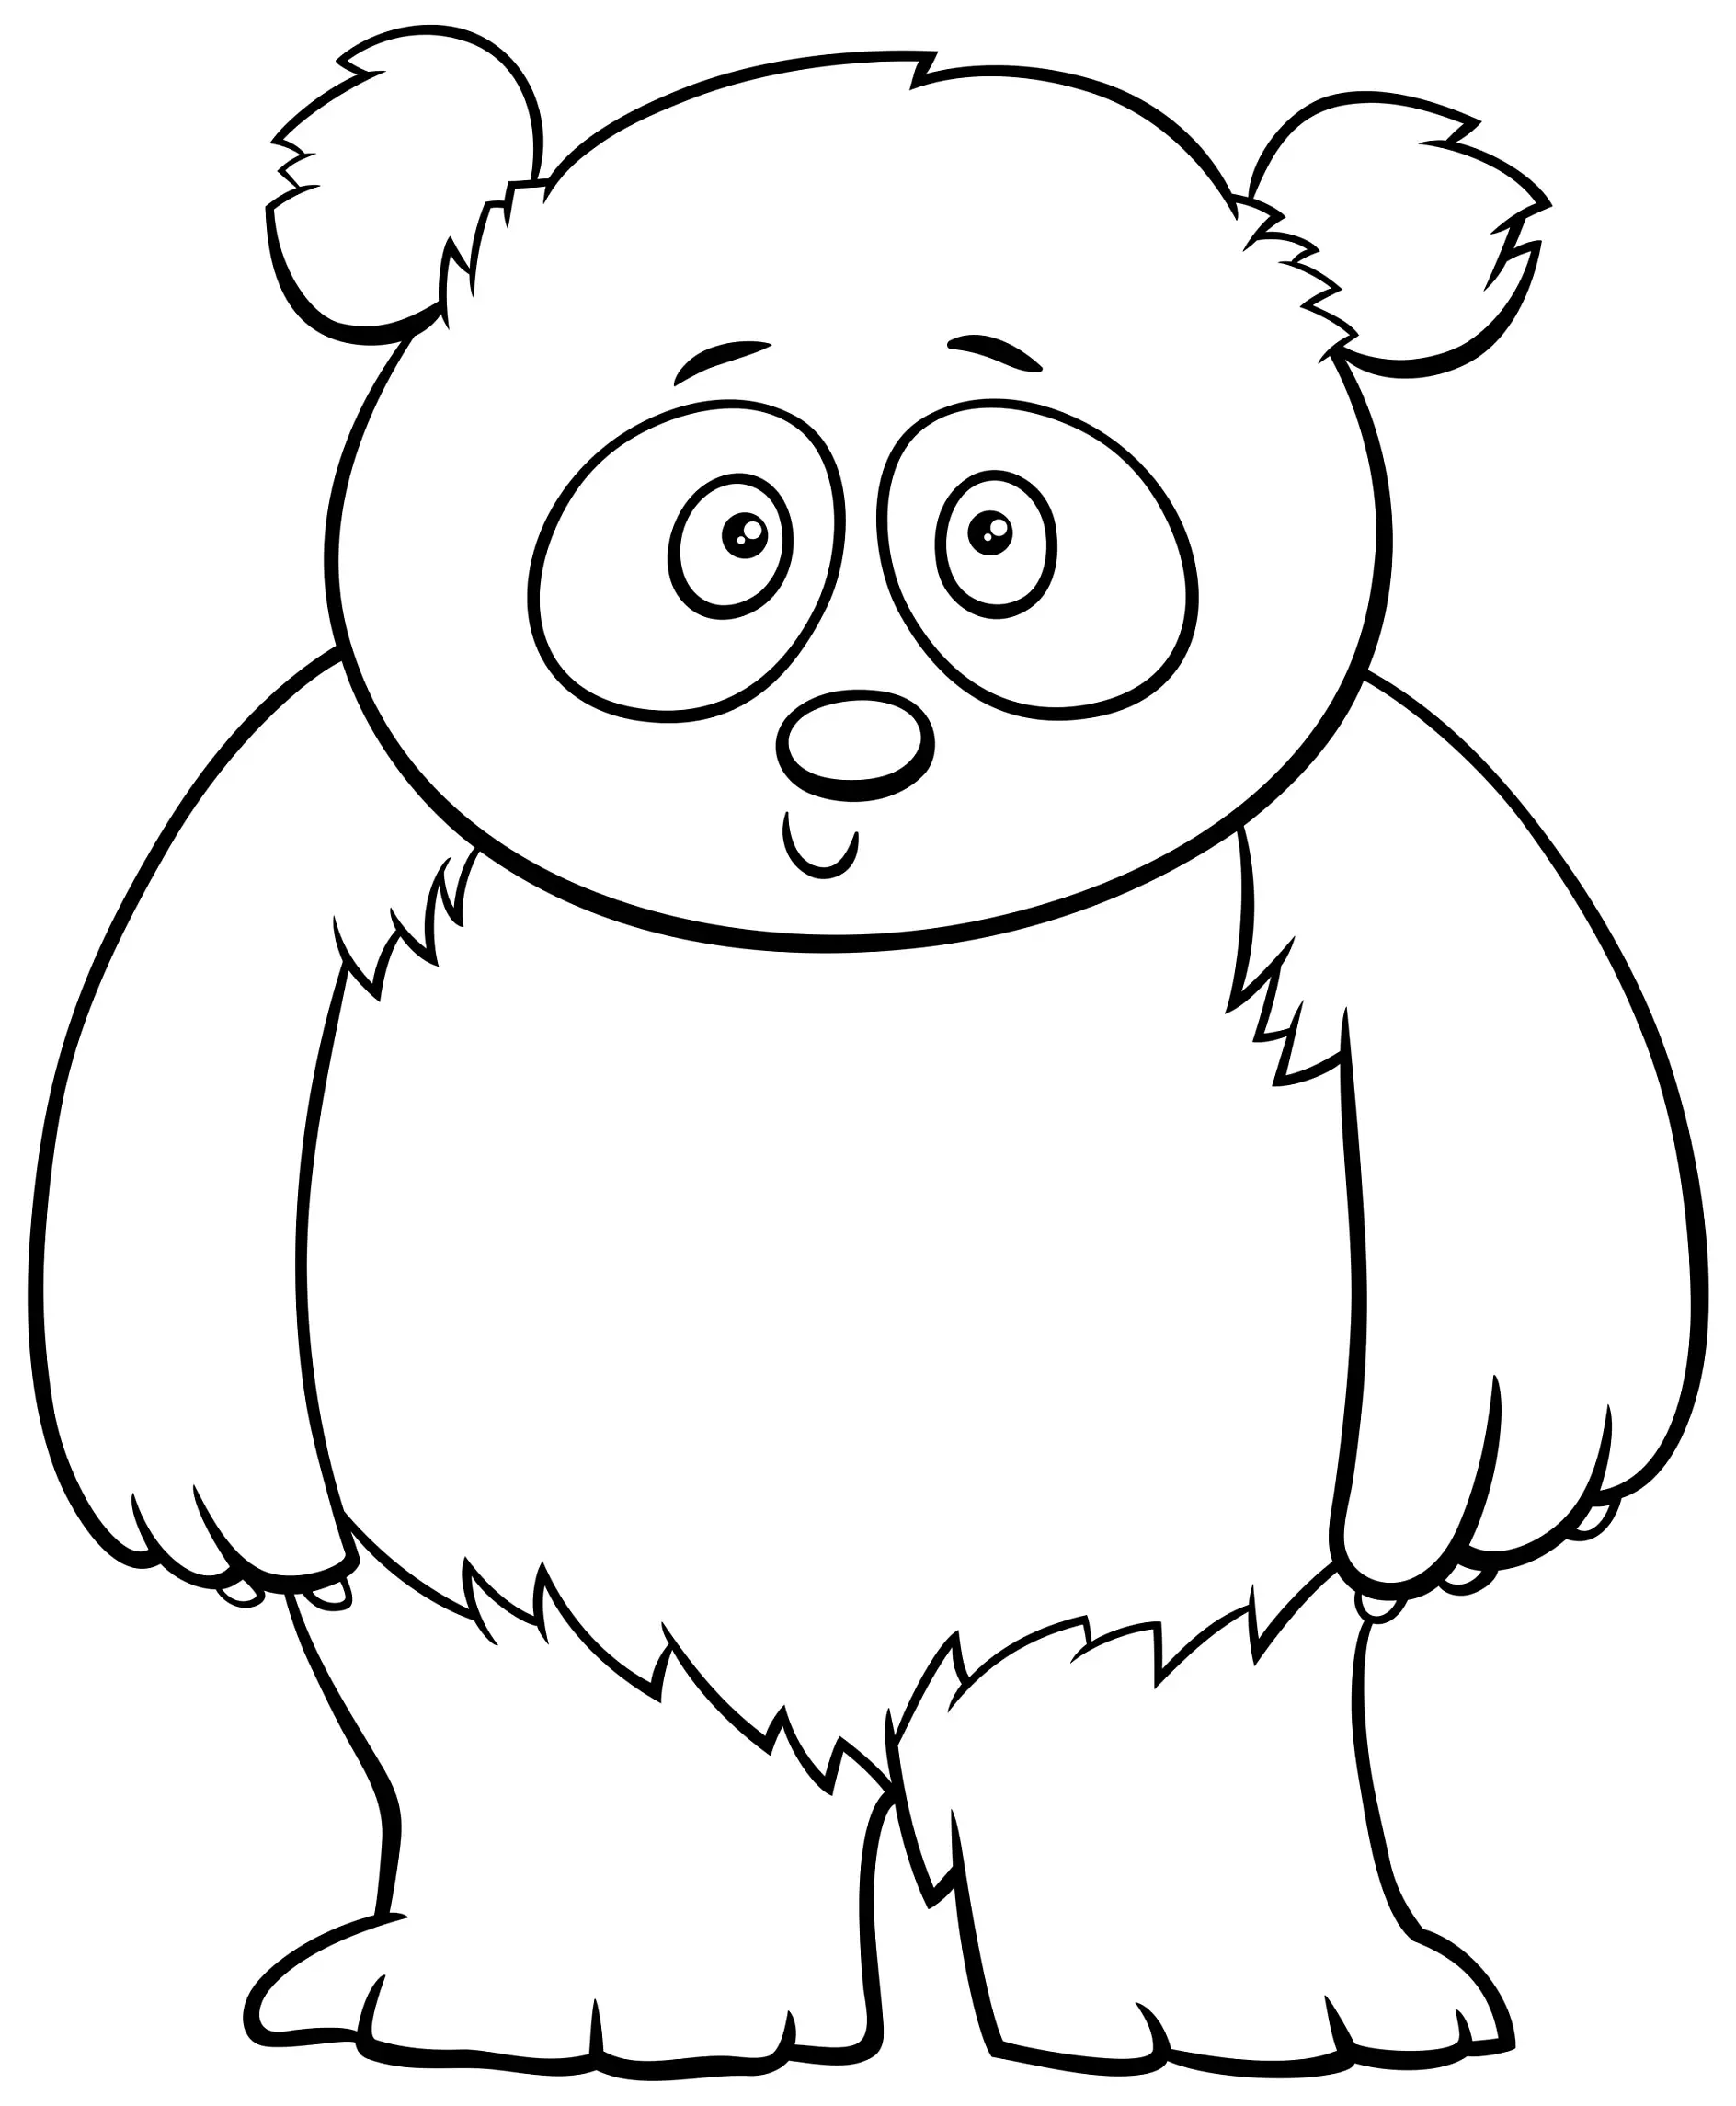 Ausmalbild stehender Panda mit großen Augen